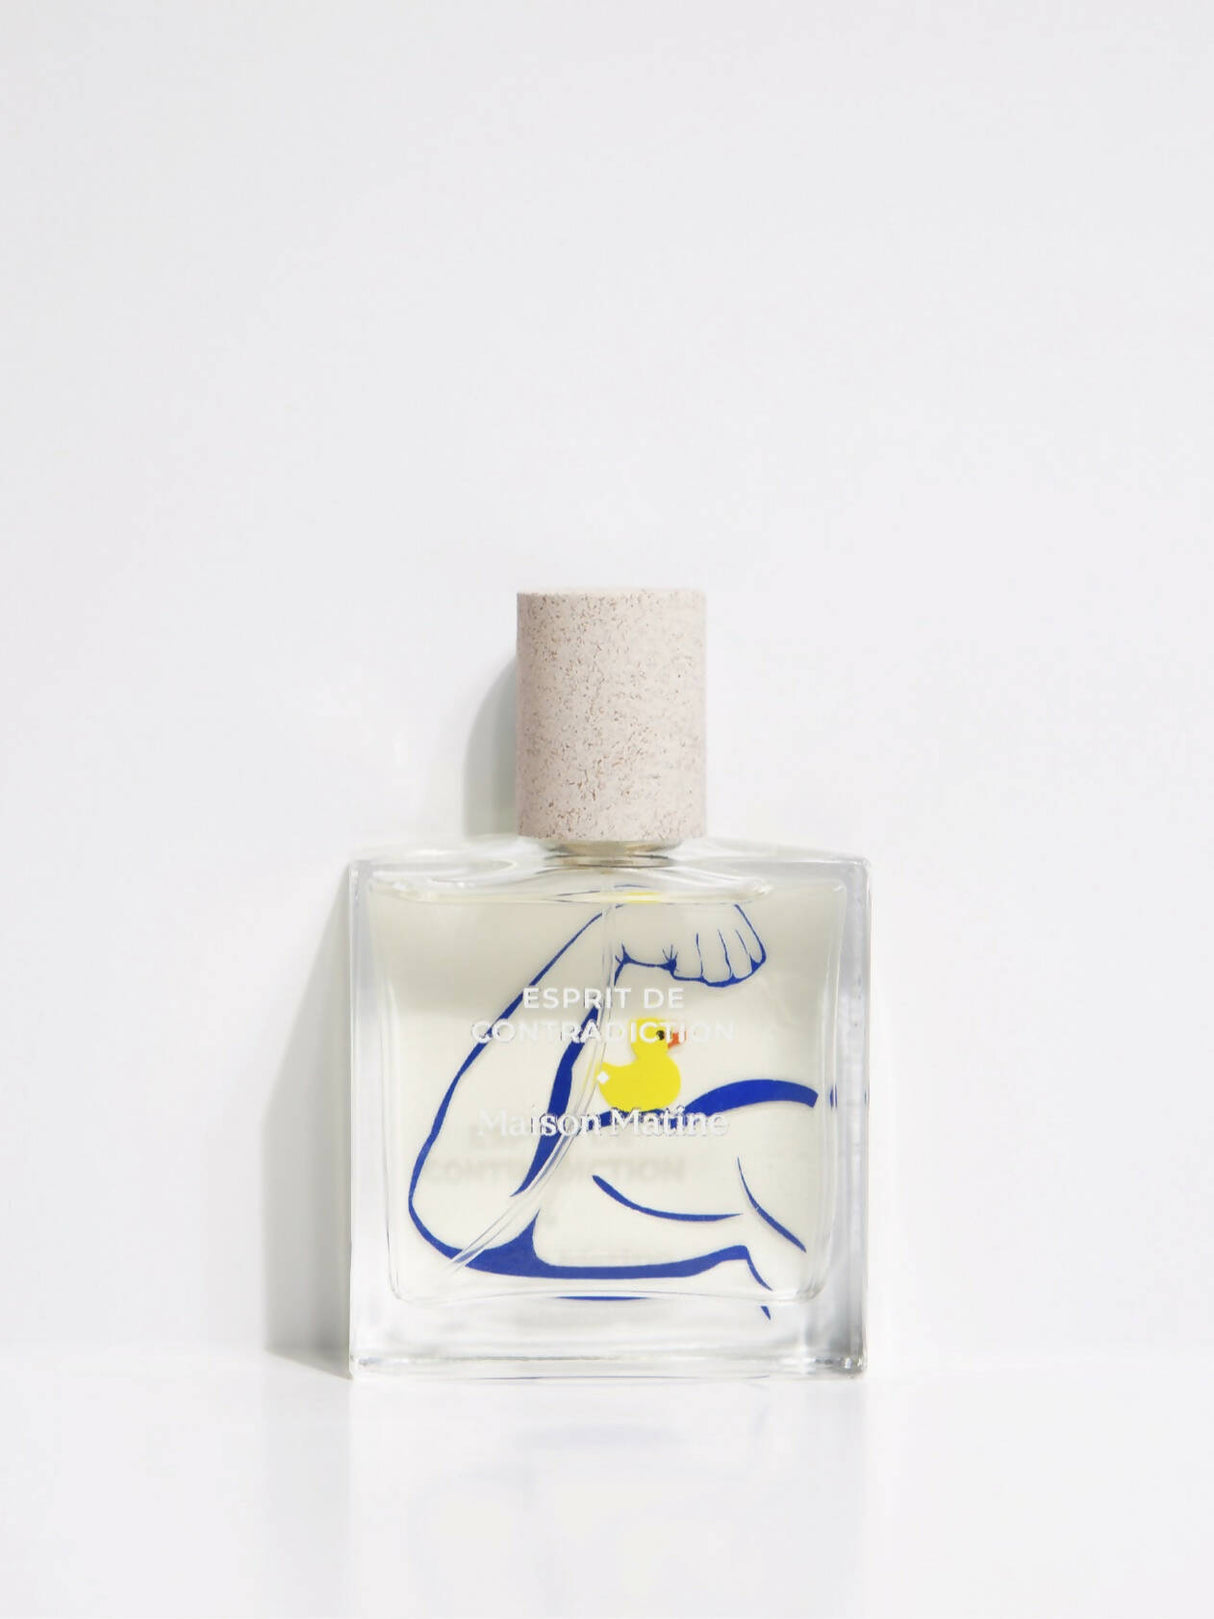 Esprit de Contradiction - Maison Matine Perfumes